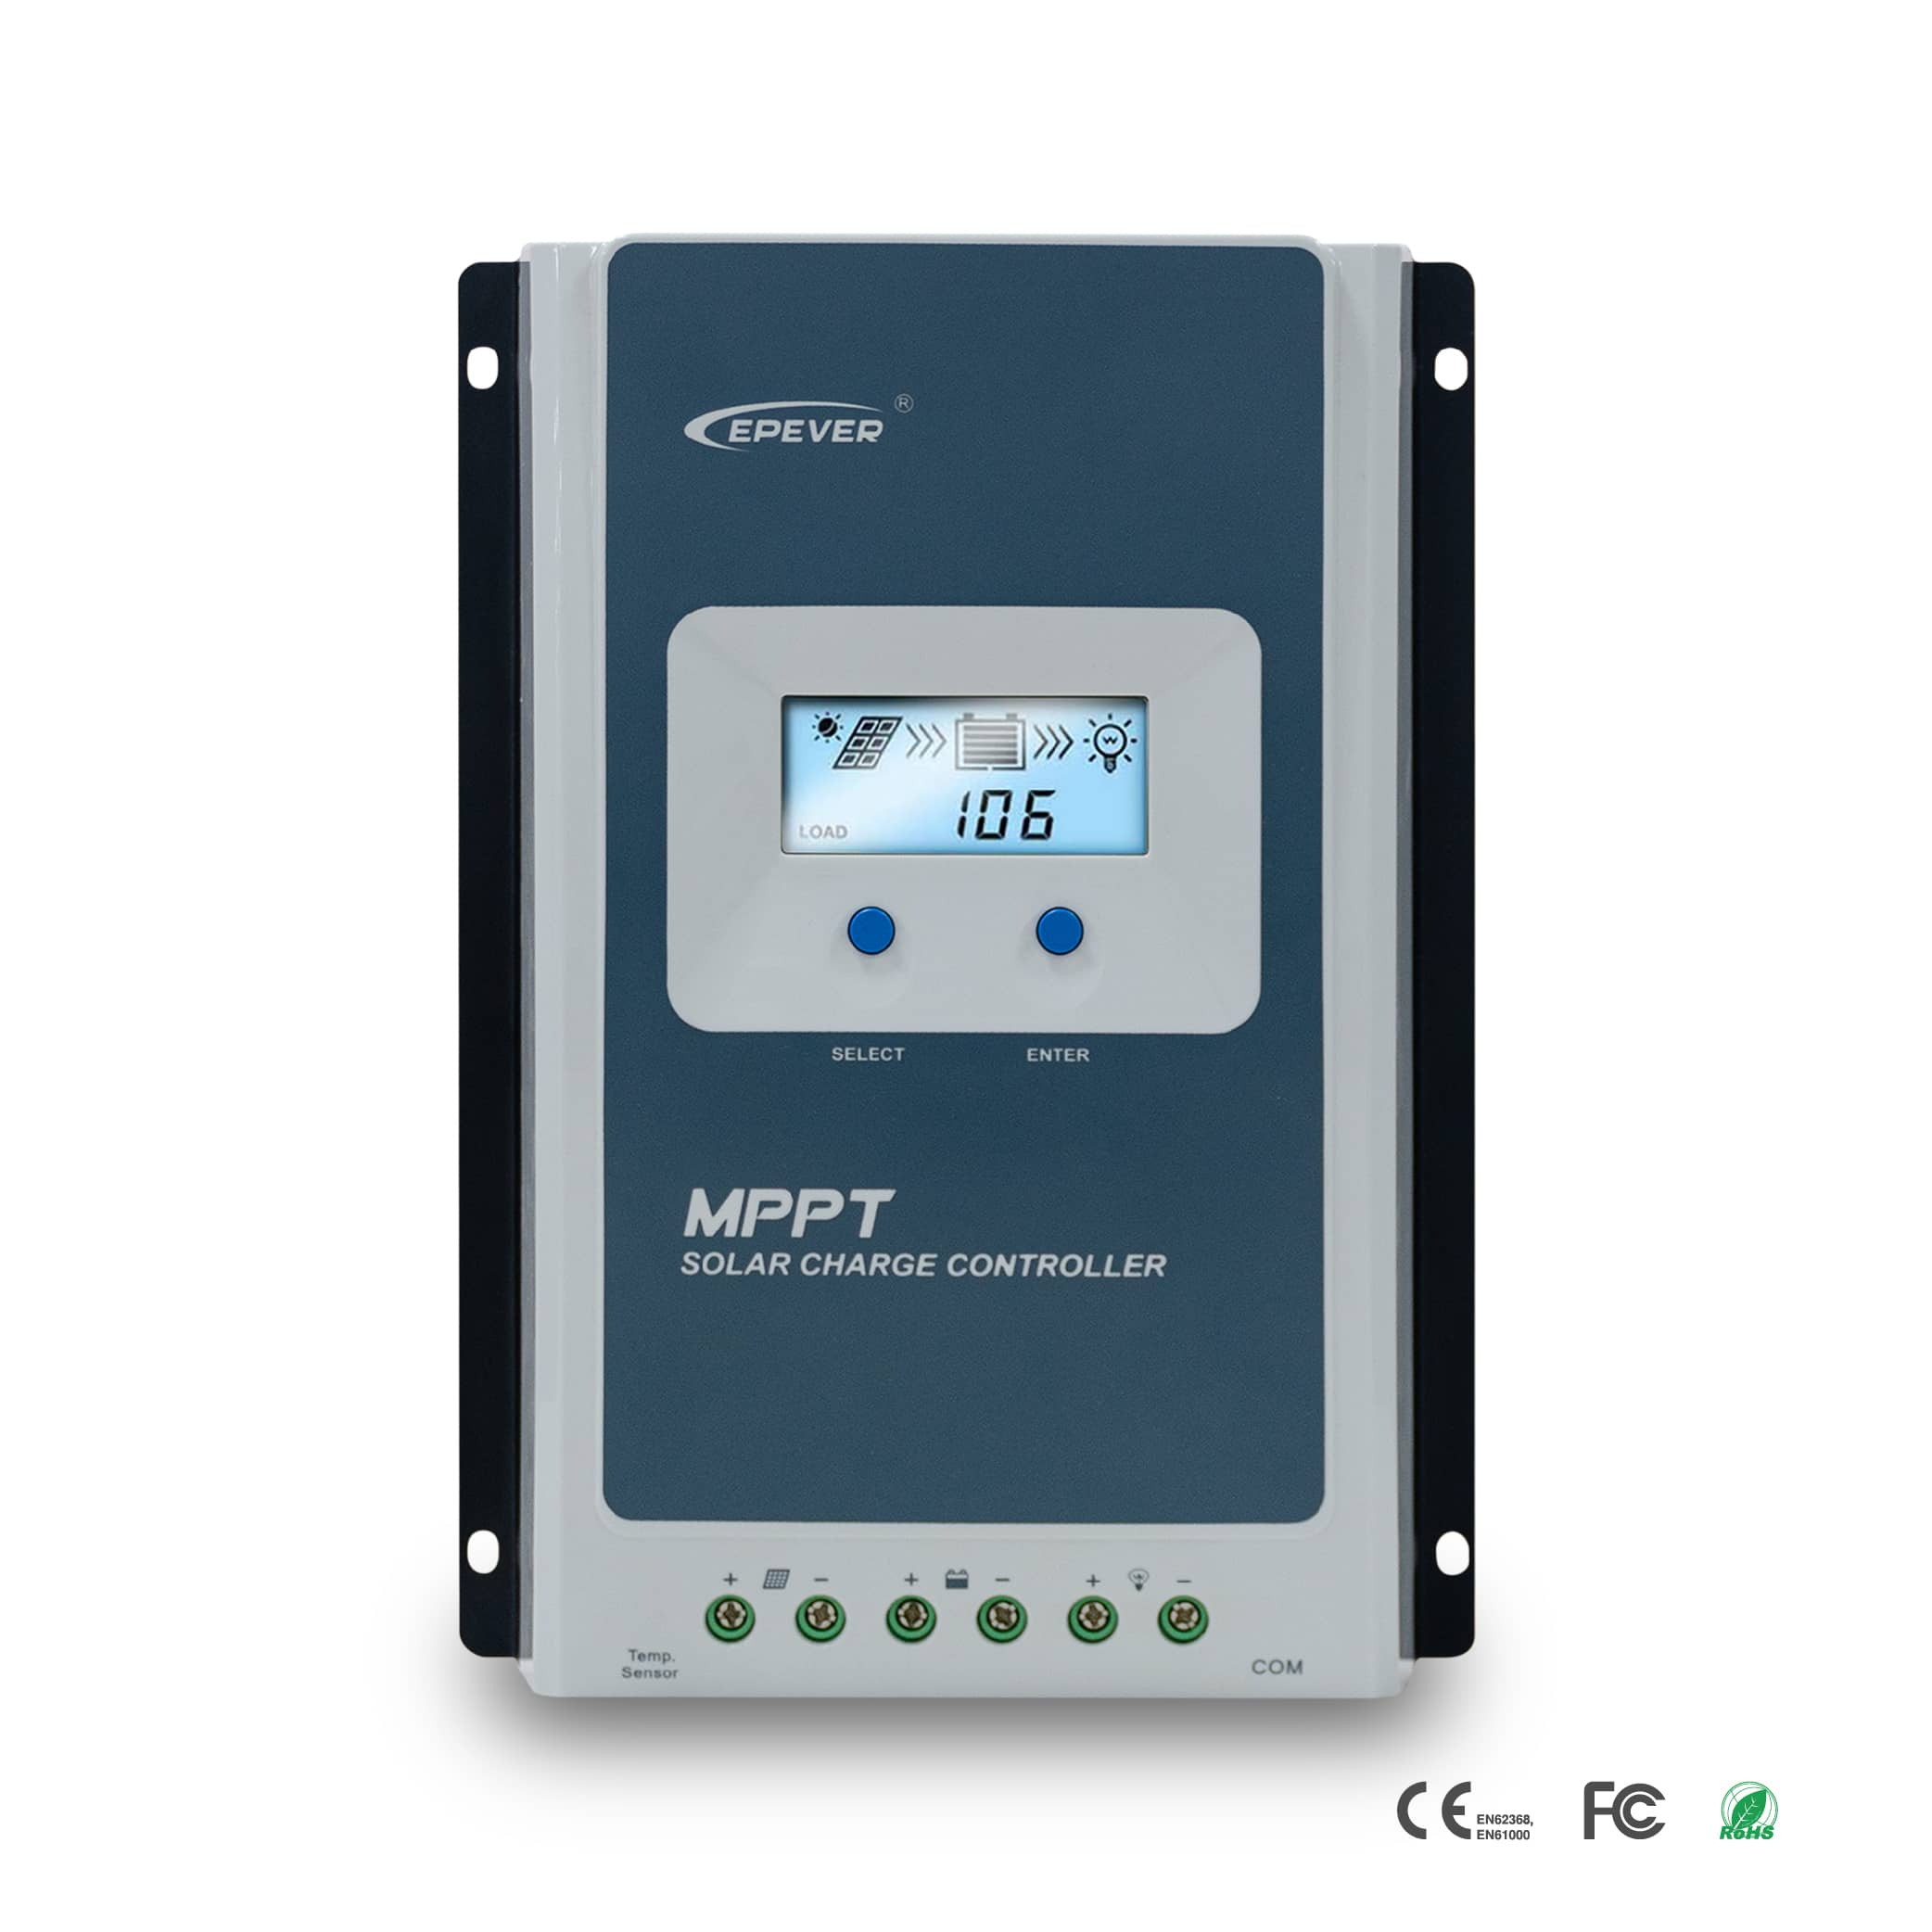 Контроллер заряда солнечных панелей MPPT 30А (Tracer 3210AN – Epever)